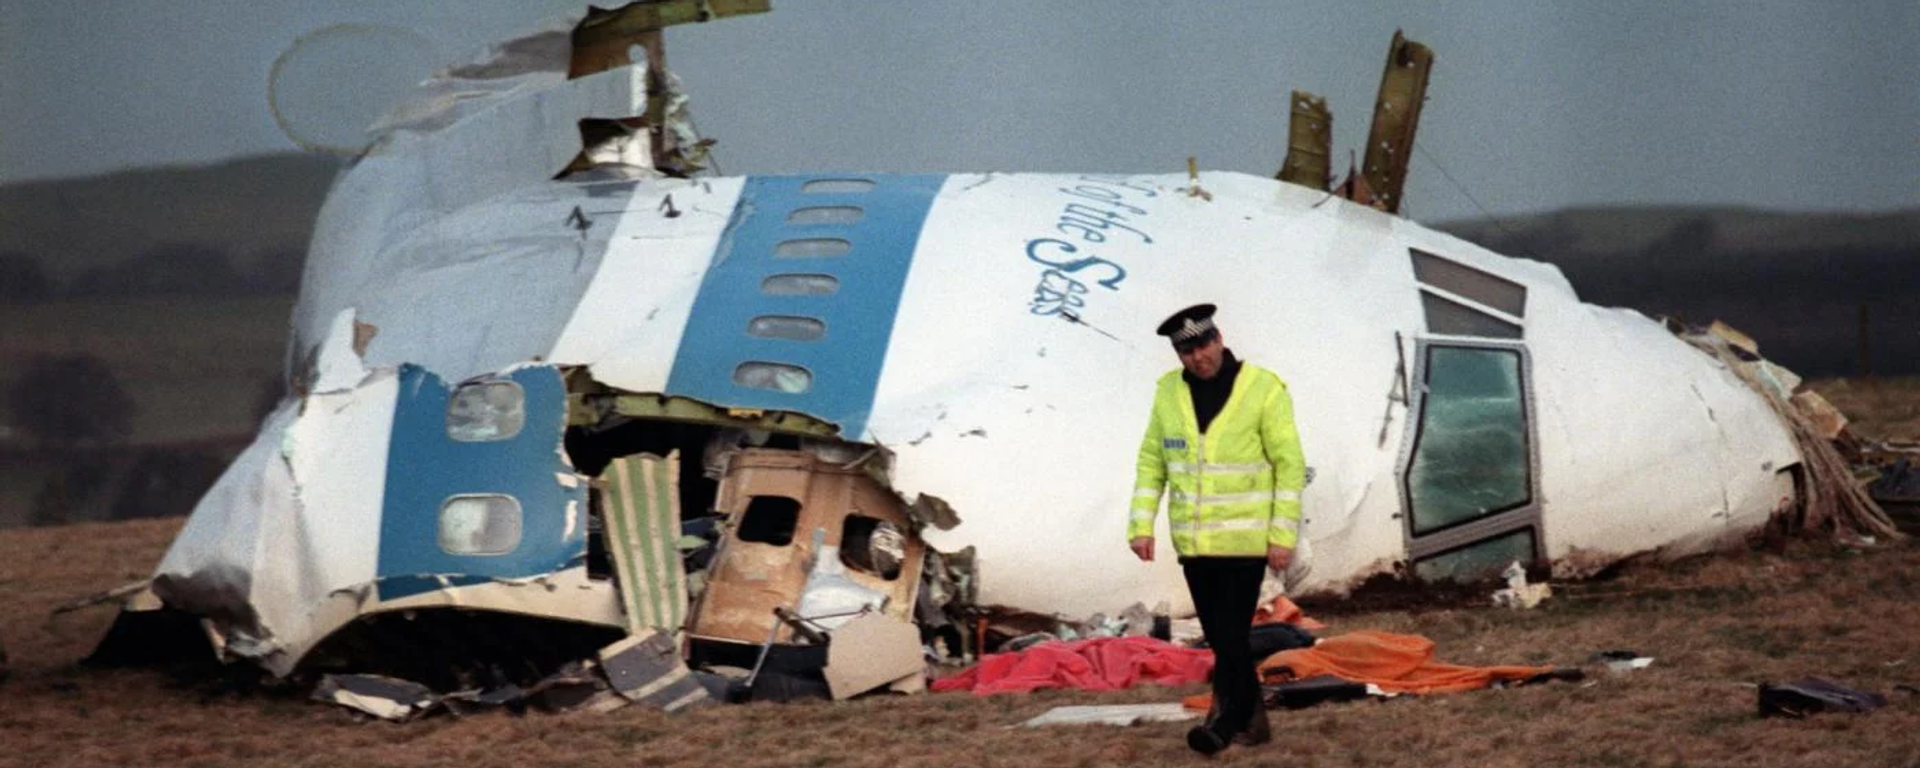 İskoç yetkililer, 34 yıl önce Lockerbie kasabası üzerinde Pan Am 103 sefer sayılı uçağın infilakına neden olan bombayı yapmakla suçlanan Libyalı Ebu Agila Muhammed Mesut'un ABD'de gözaltına alındığını duyurdu. - Sputnik Türkiye, 1920, 13.12.2022